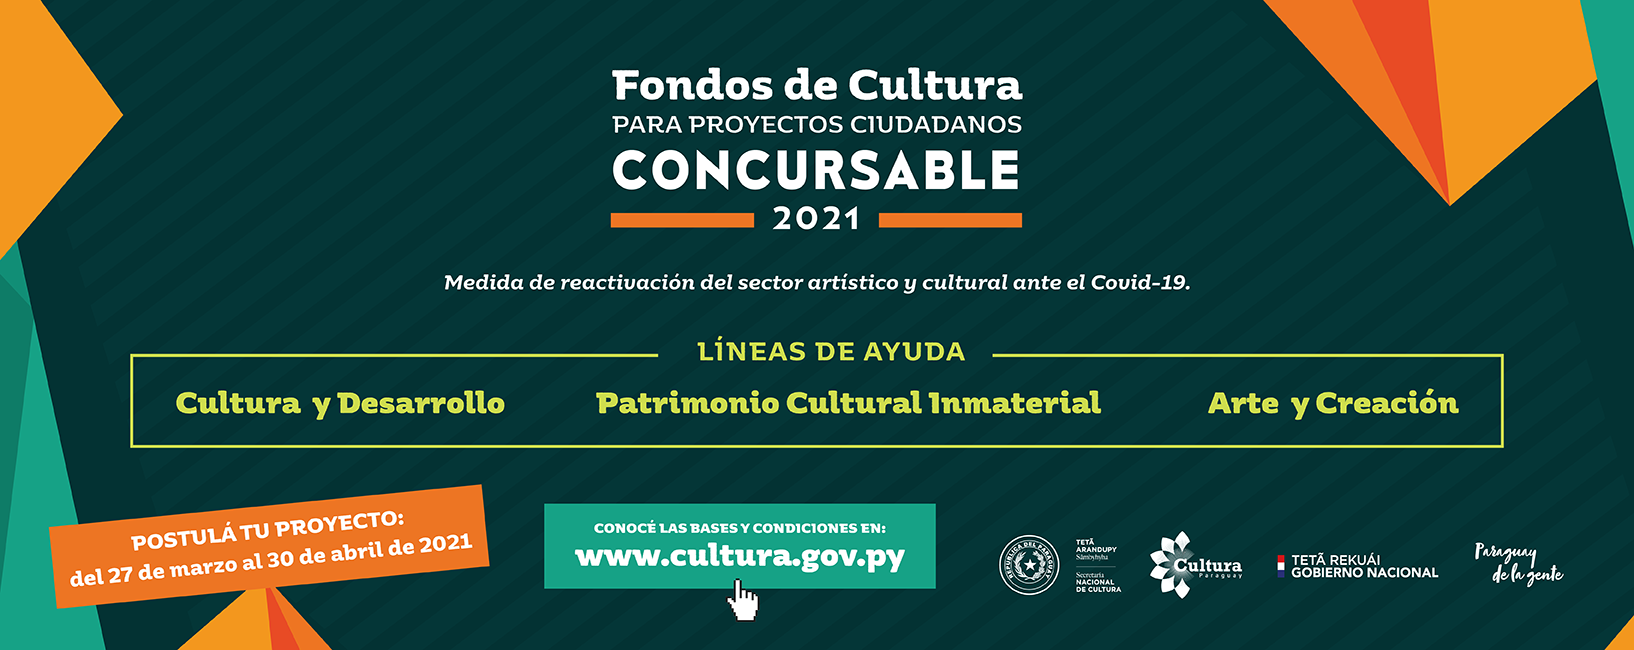 Fondos de Cultura para Proyectos Ciudadanos – Concursable 2021 imagen